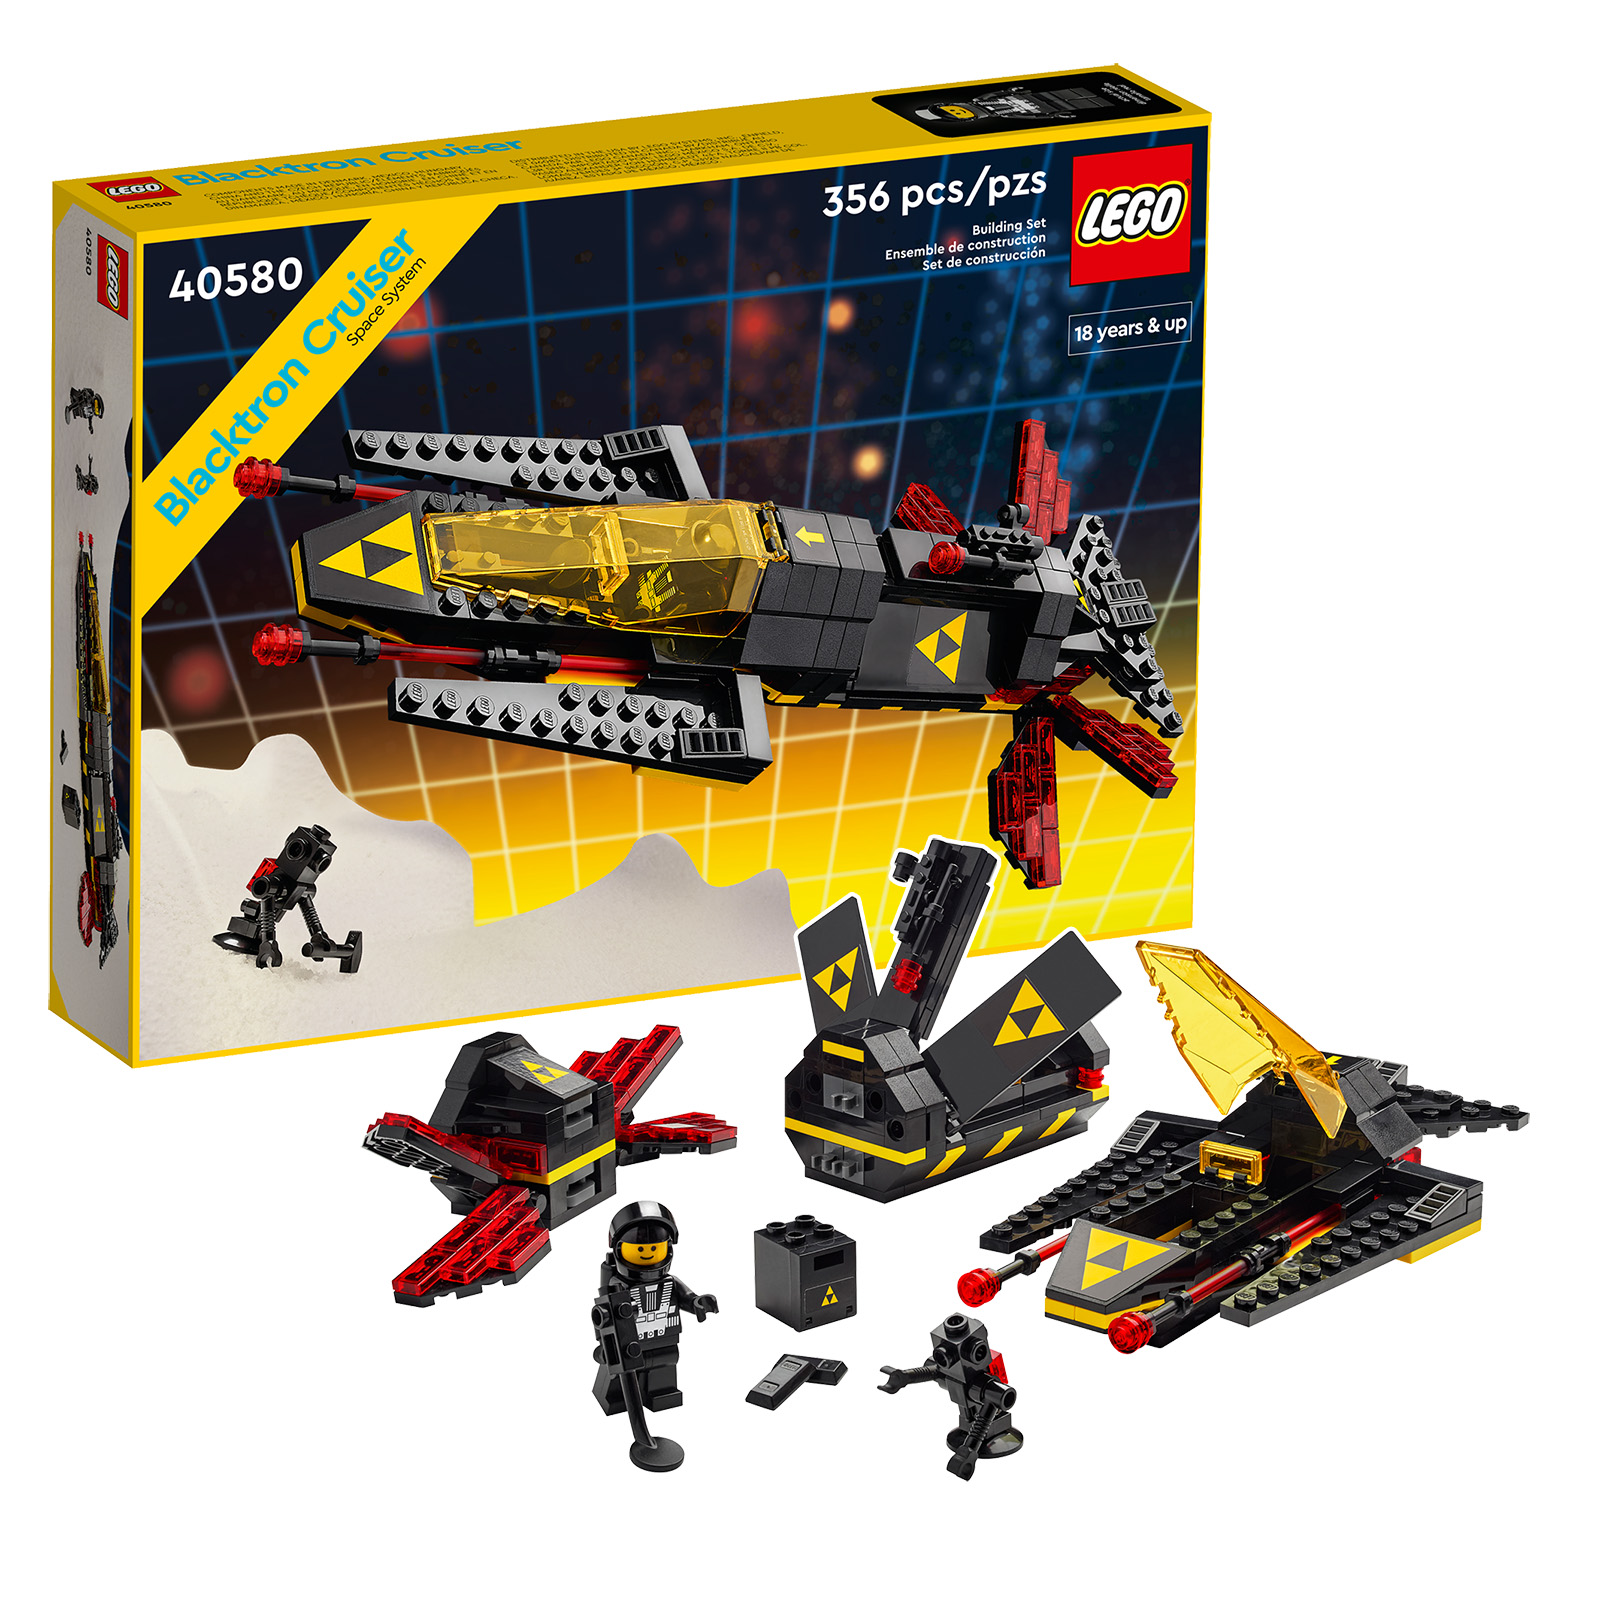 LEGO խանութում. վերջին ժամերը՝ 40580 Blacktron Cruiser-ն անվճար ստանալու համար 190 եվրո գնից: